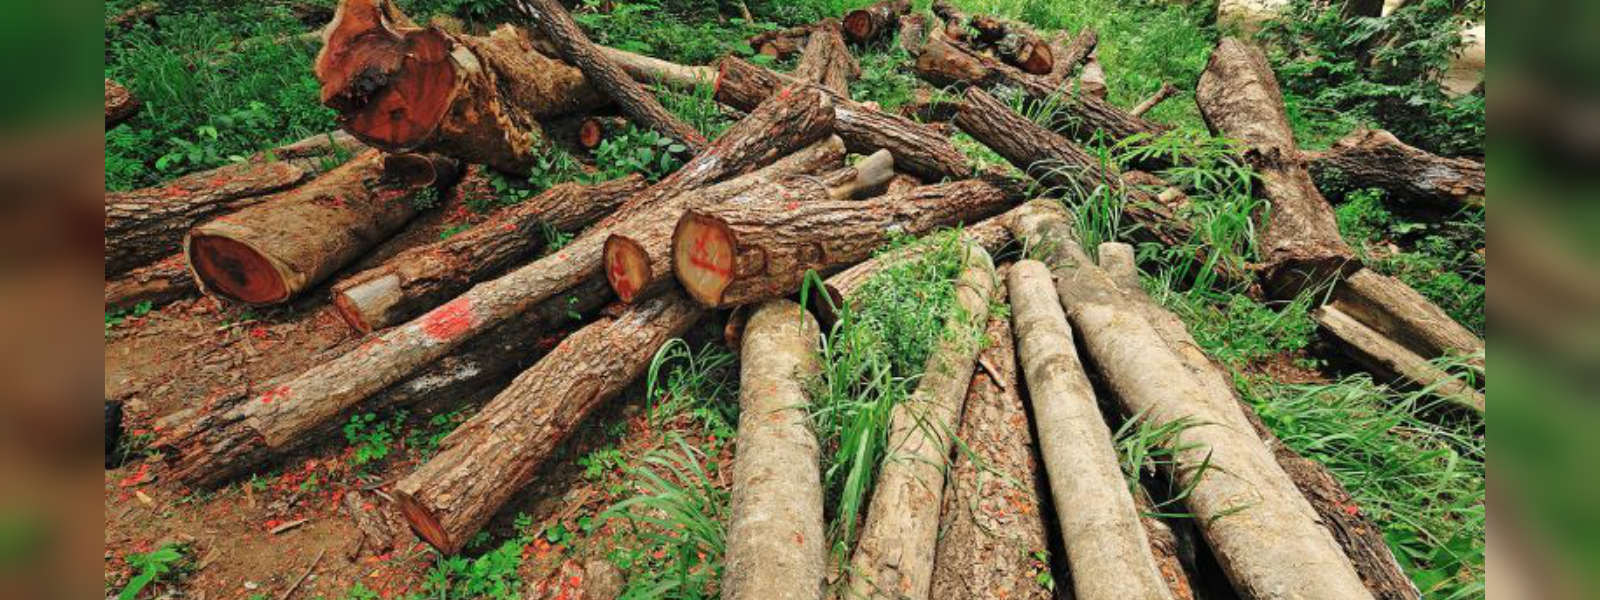 One arrested over illegal logging